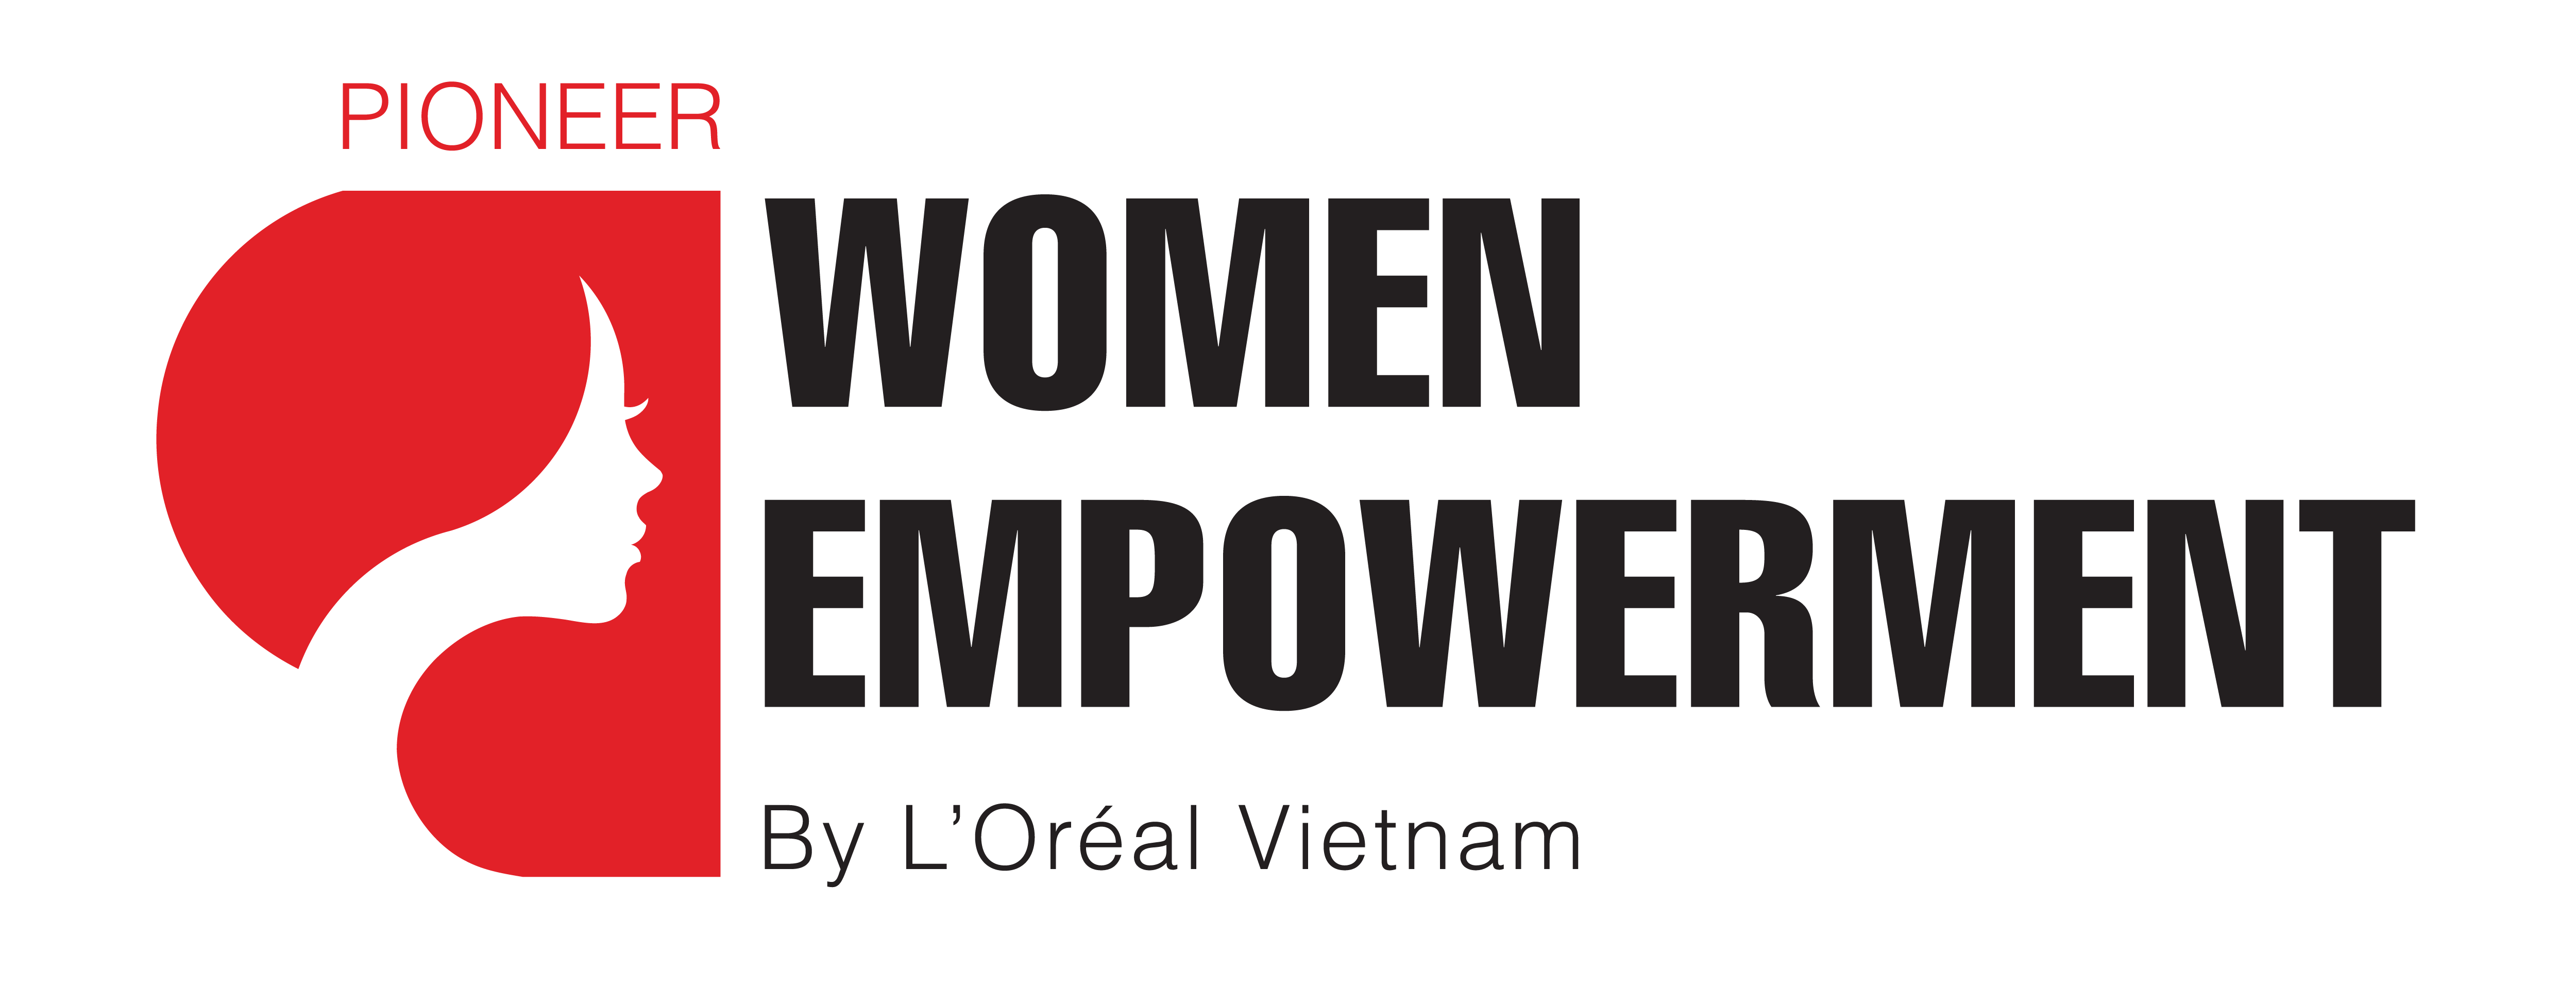 PIONEER WOMEN EMPOWERMENT IN VIETNAM